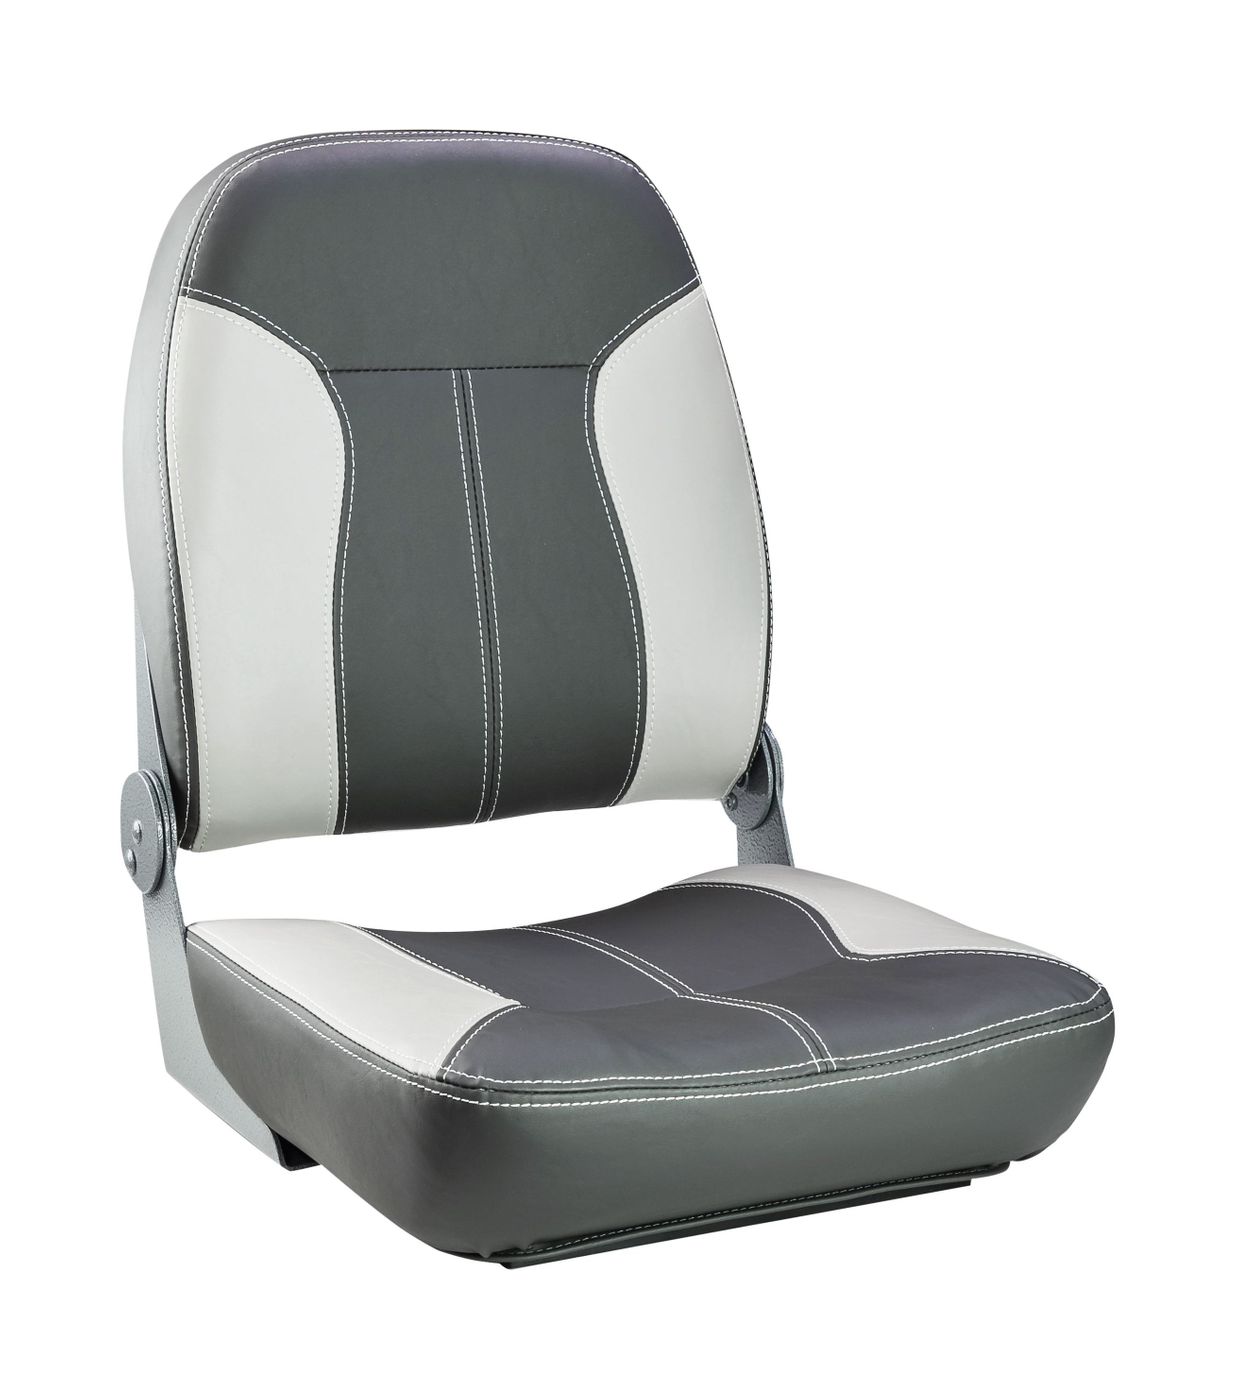 Кресло складное мягкое SPORT с высокой спинкой, серый/темно-серый 1040543 кресло складное мягкое skipper серый темно серый 1061017